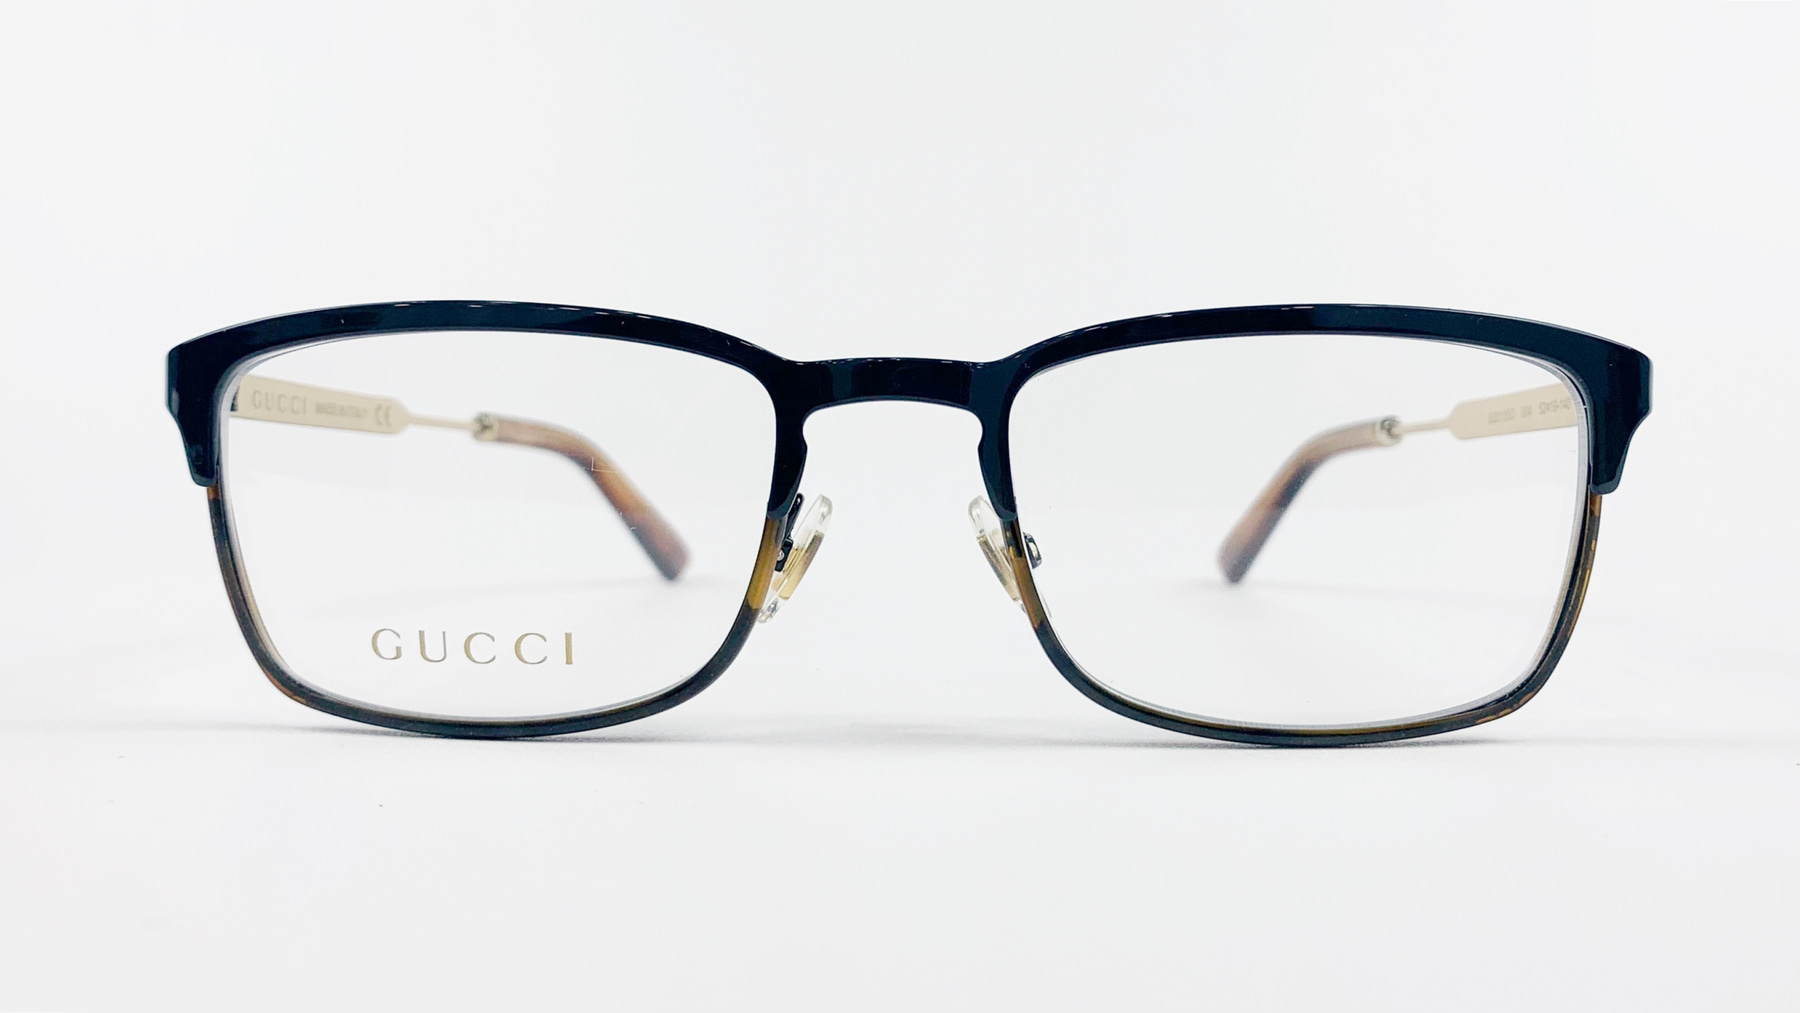 GUCCI GG0135O, Korean glasses, sunglasses, eyeglasses, glasses